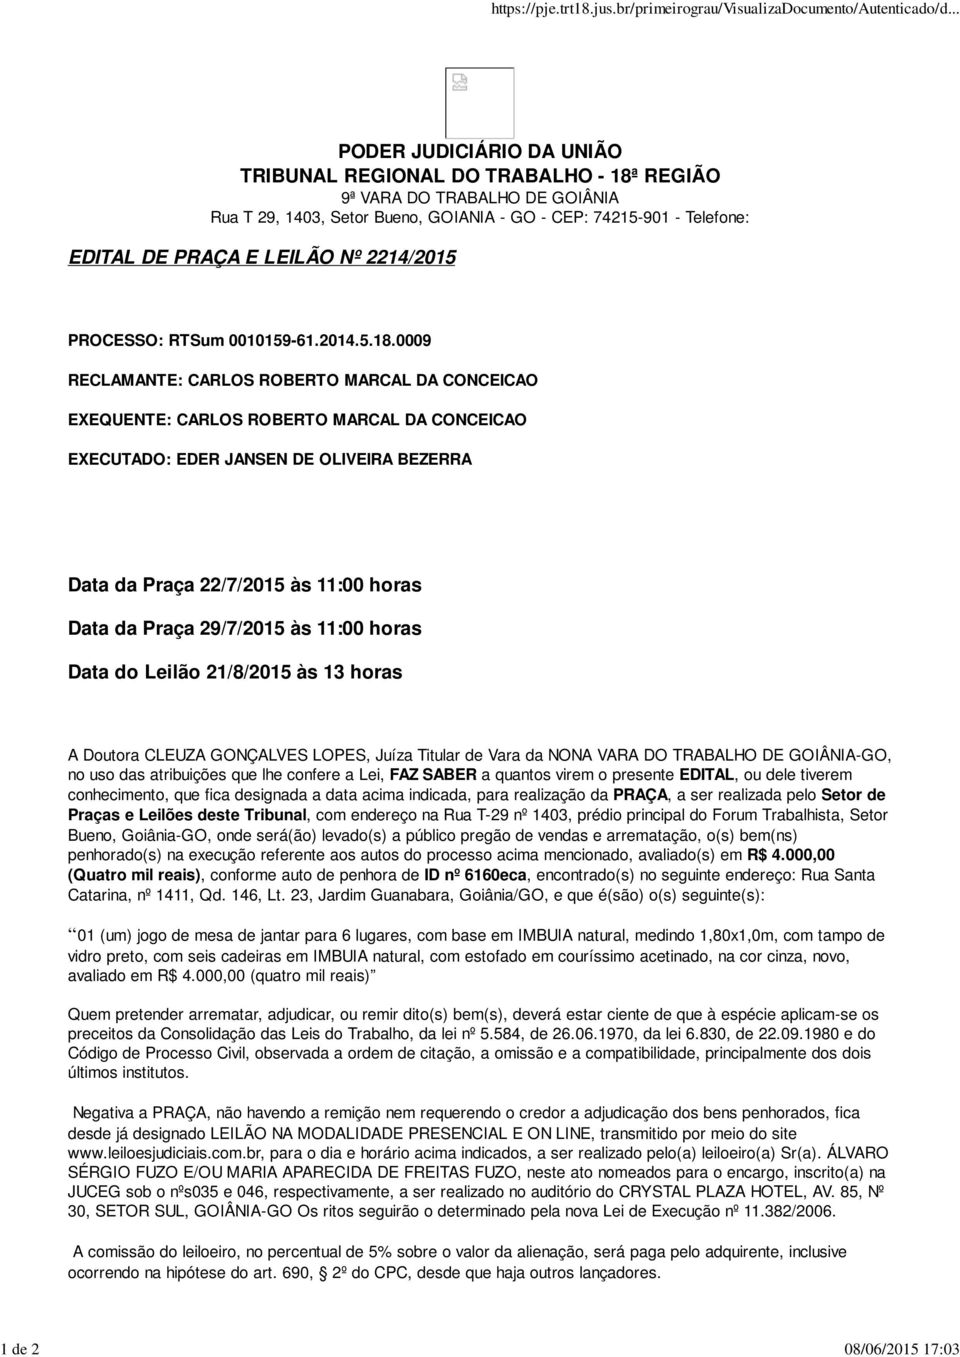 EDITAL DE PRAÇA E LEILÃO Nº 2214/2015 PROCESSO: RTSum 0010159-61.2014.5.18.